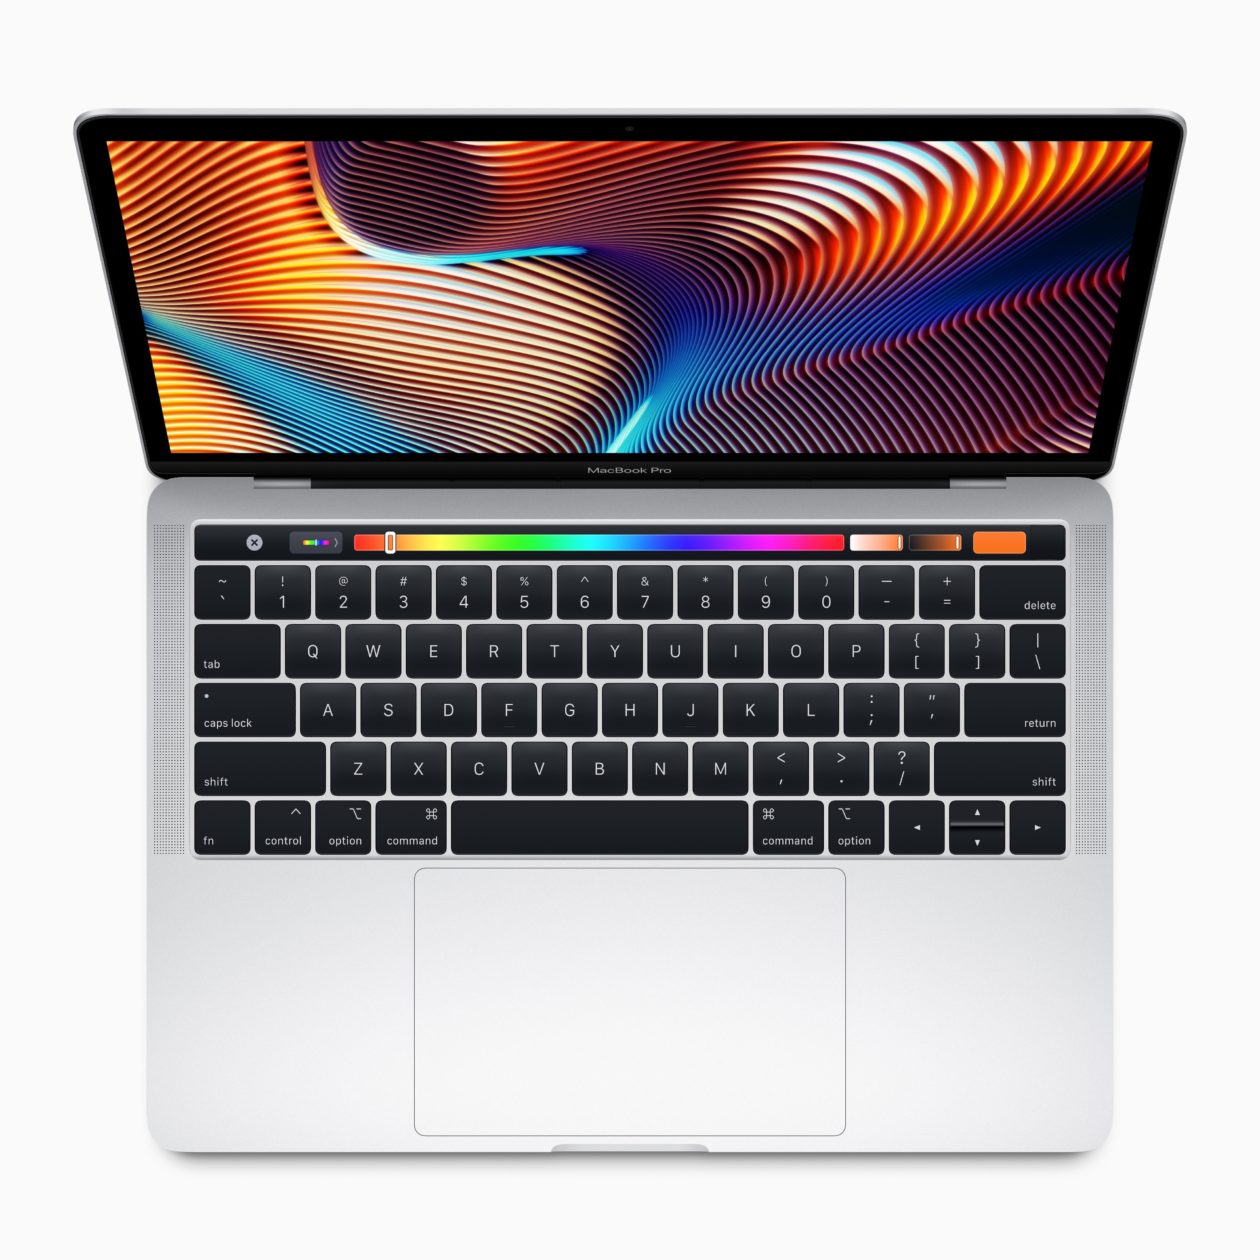 Nuevo MacBook Pro de 13 pulgadas visto desde arriba con su Touch Bar